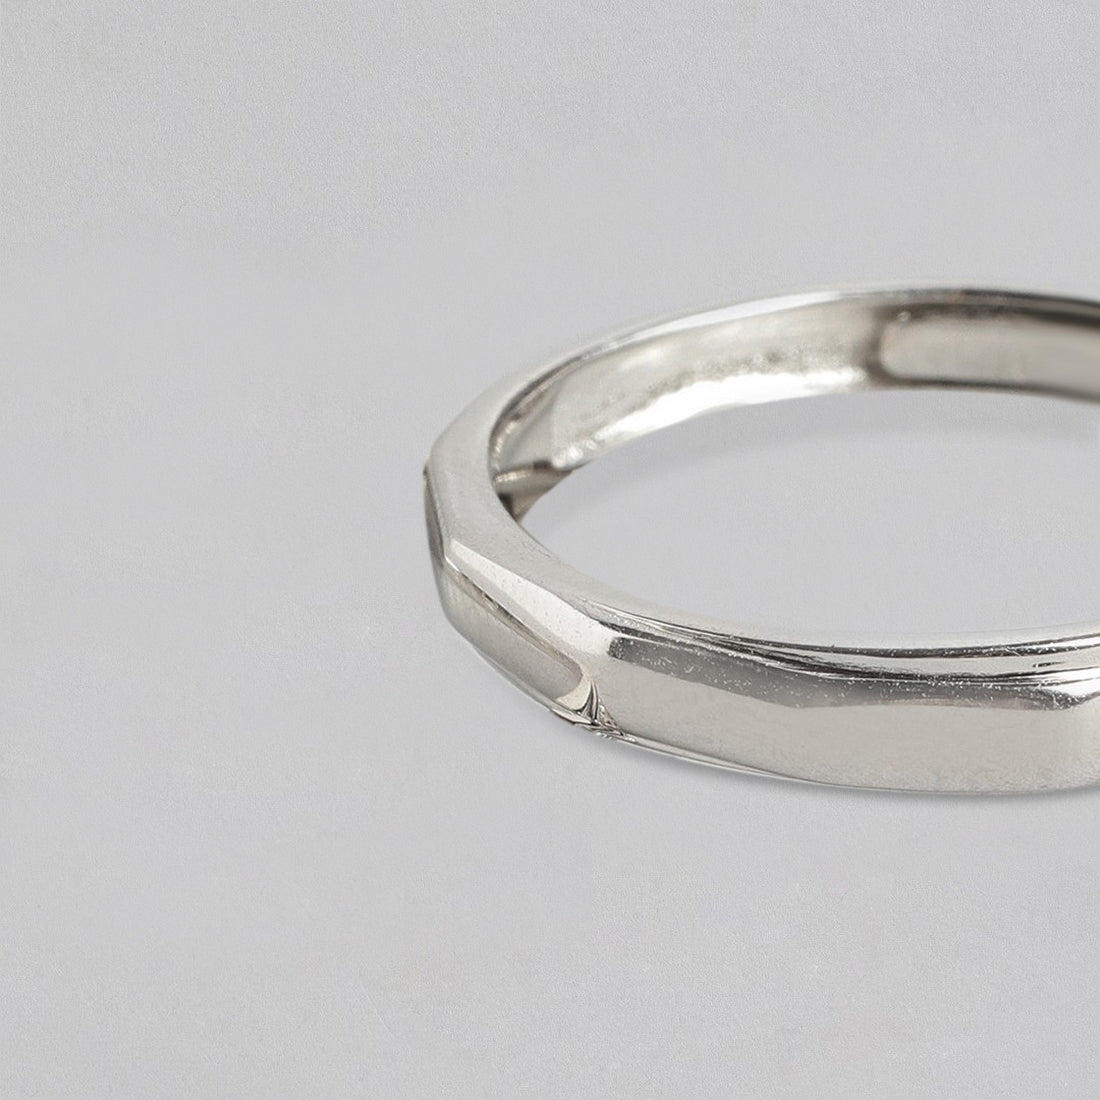 Cohort Band 925 Sterling Silver Ring for Him (Adjustable)